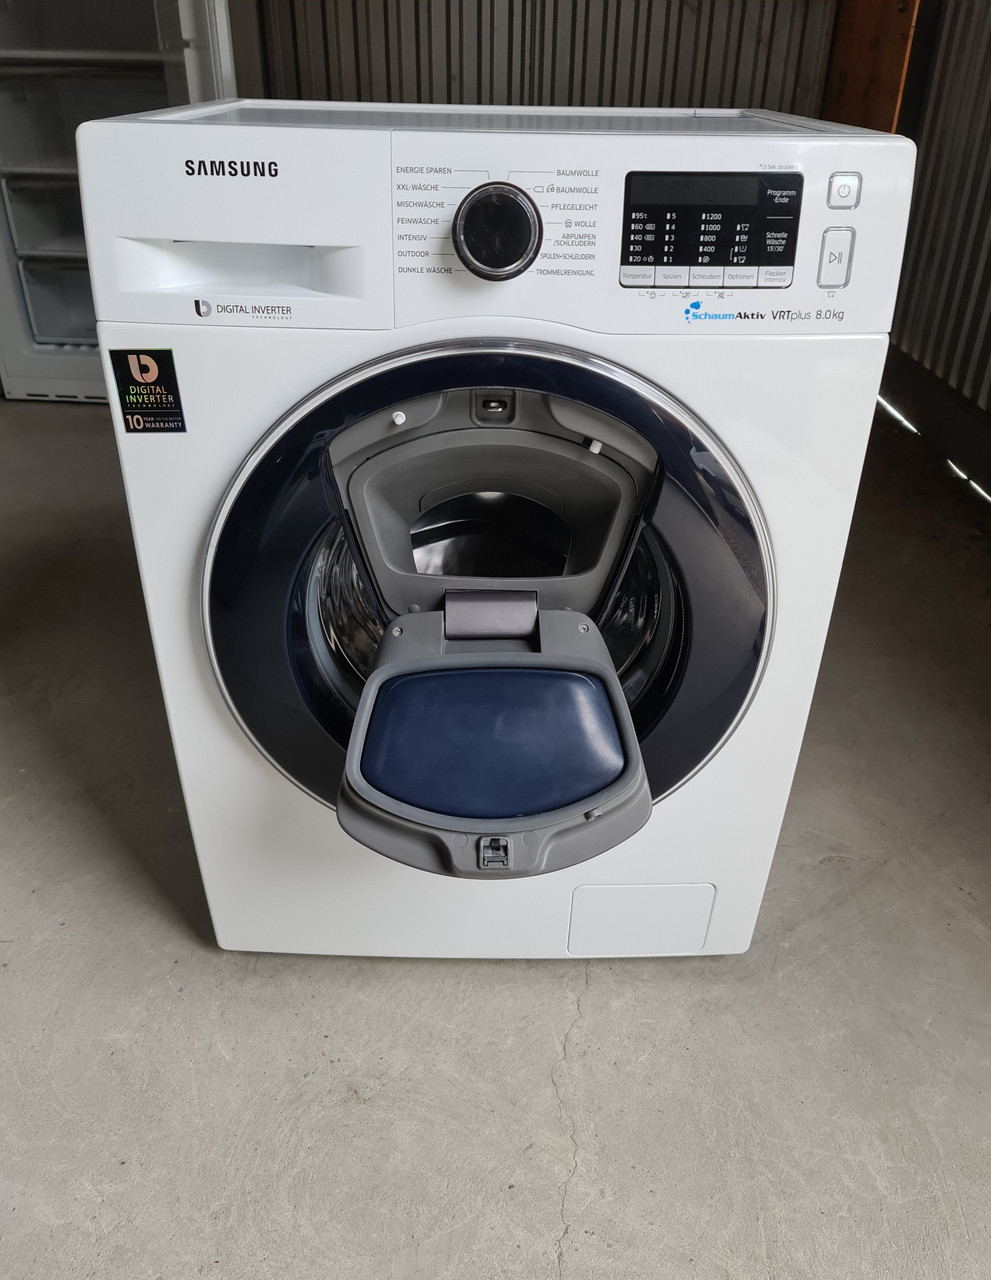 Узкая стиральная машина SAMSUNG 8 KG / 2019-го года выпуска / WW80K52A0VW,  цена 13499 грн - Prom.ua (ID#1470298955)